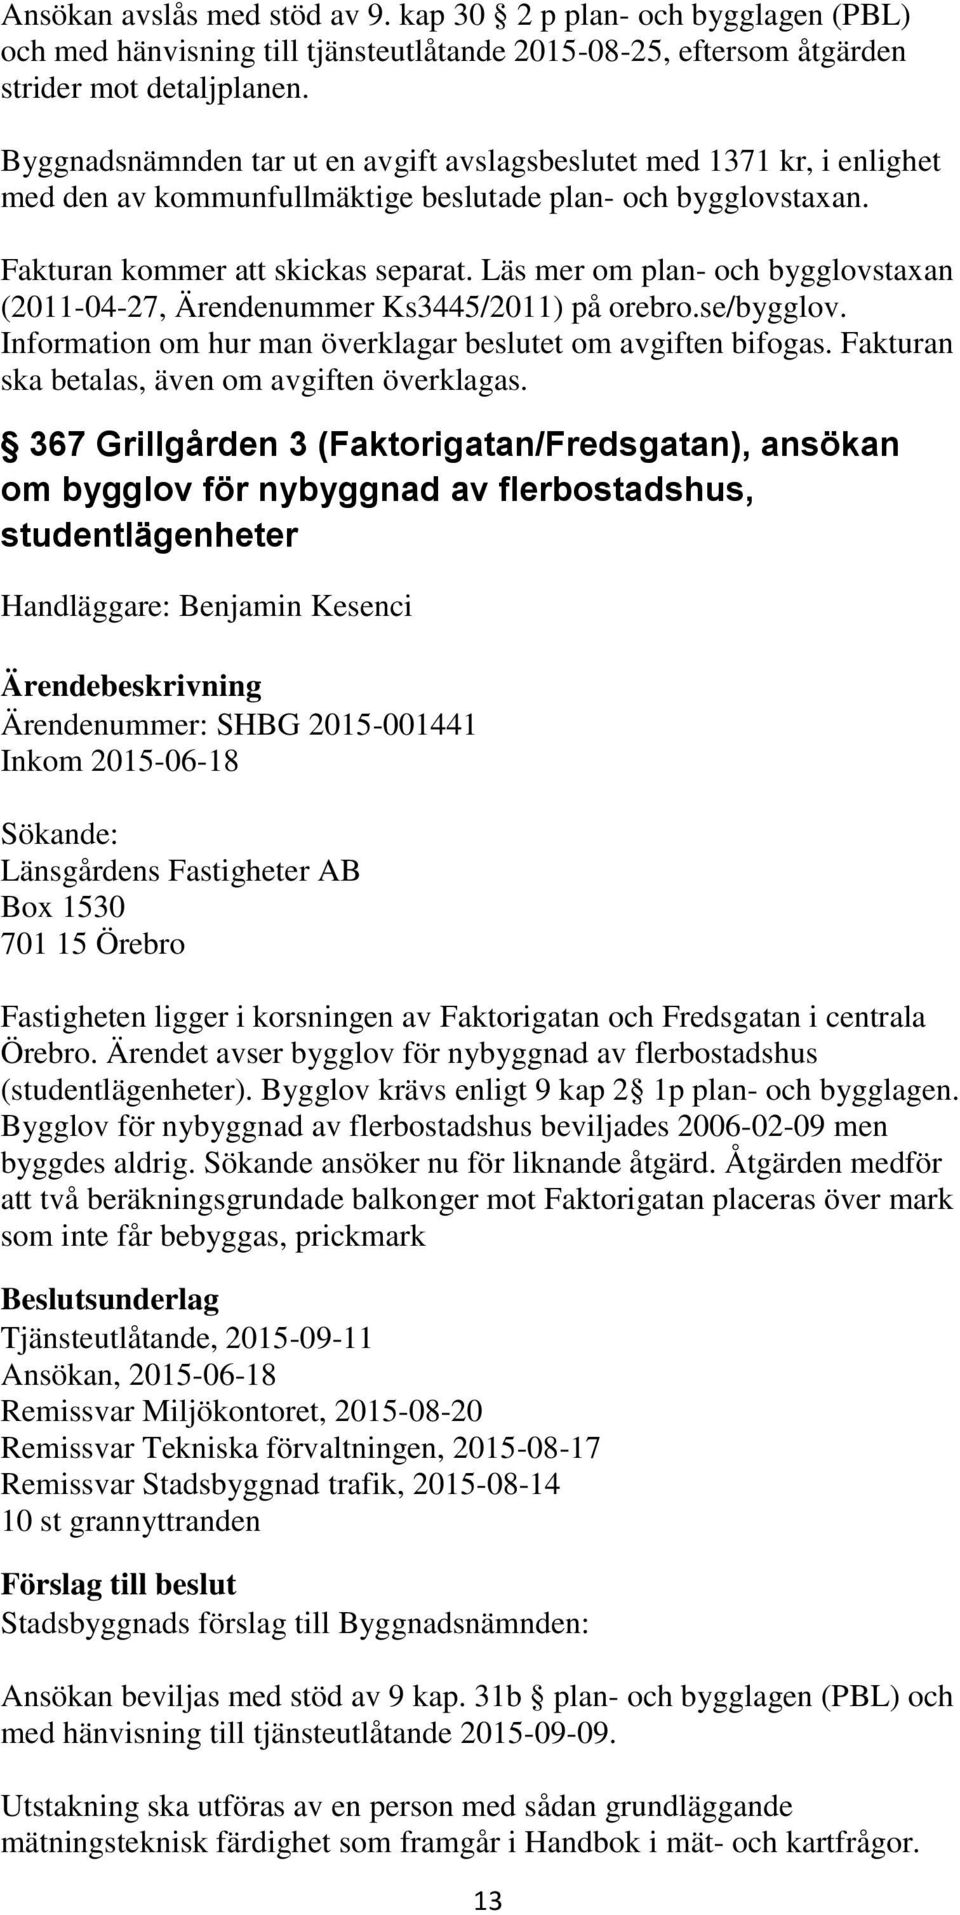 Läs mer om plan- och bygglovstaxan (2011-04-27, Ärendenummer Ks3445/2011) på orebro.se/bygglov. Information om hur man överklagar beslutet om avgiften bifogas.